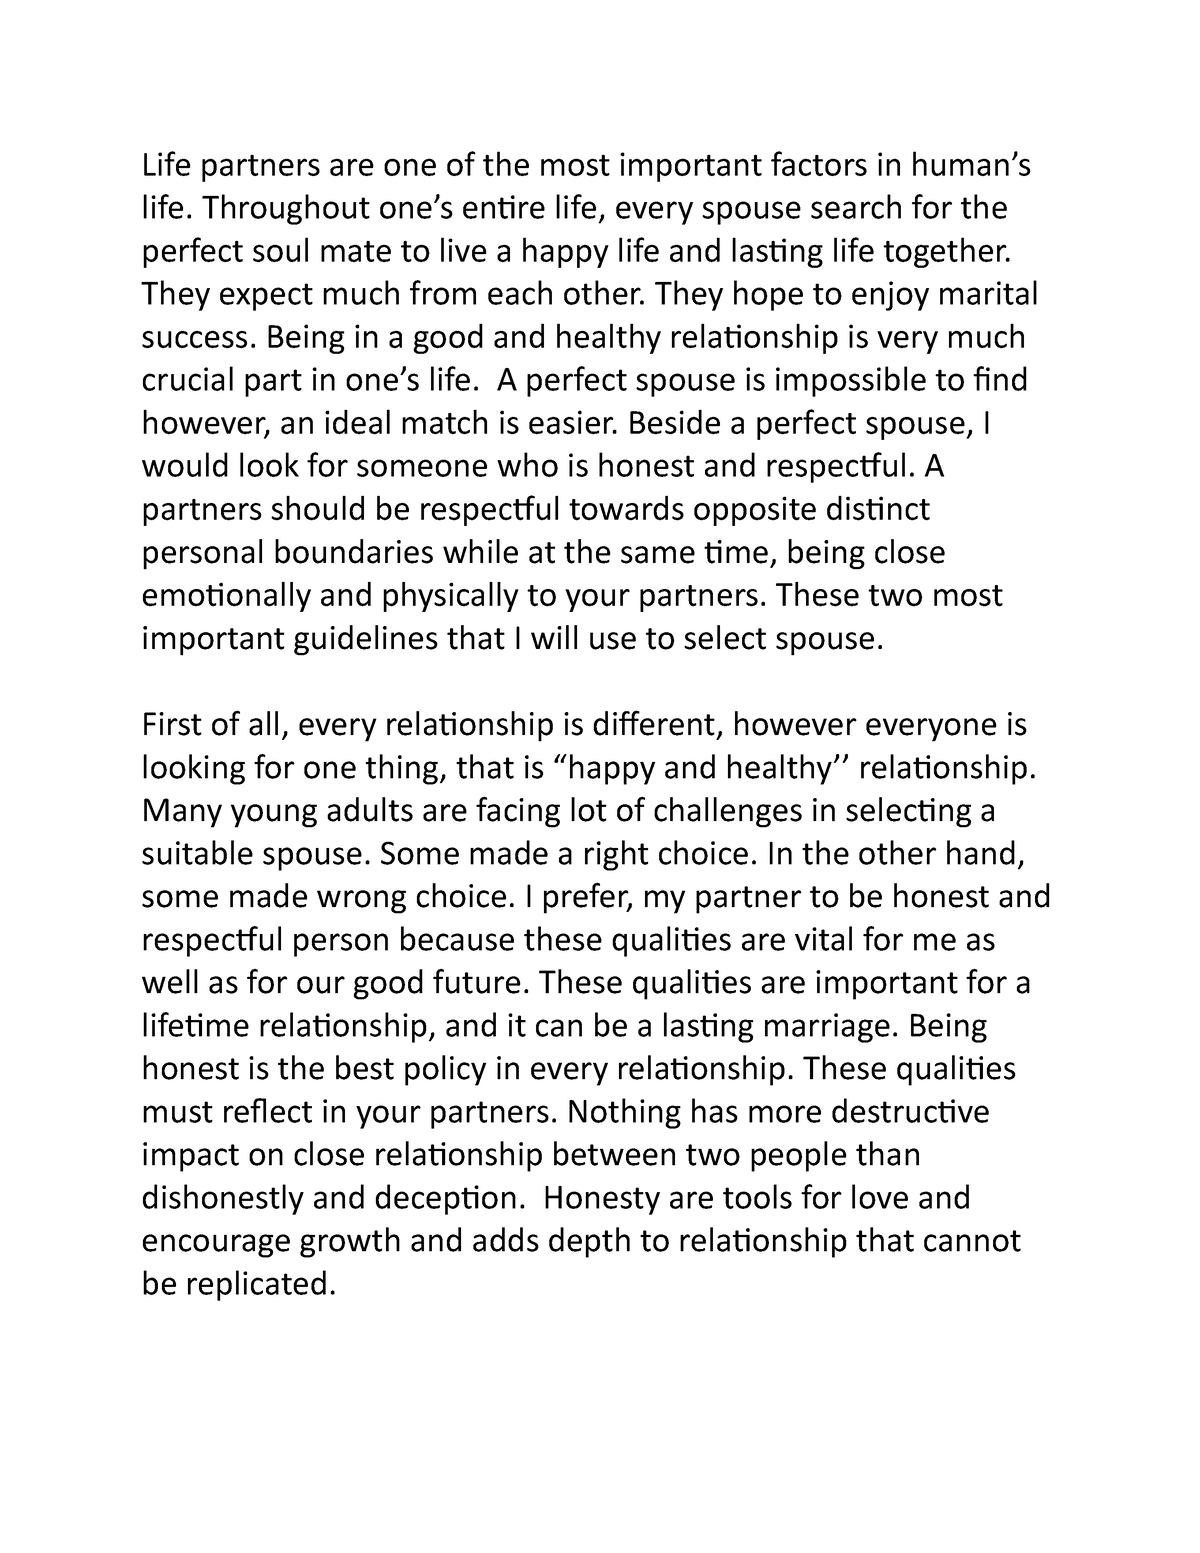 essay of life partner